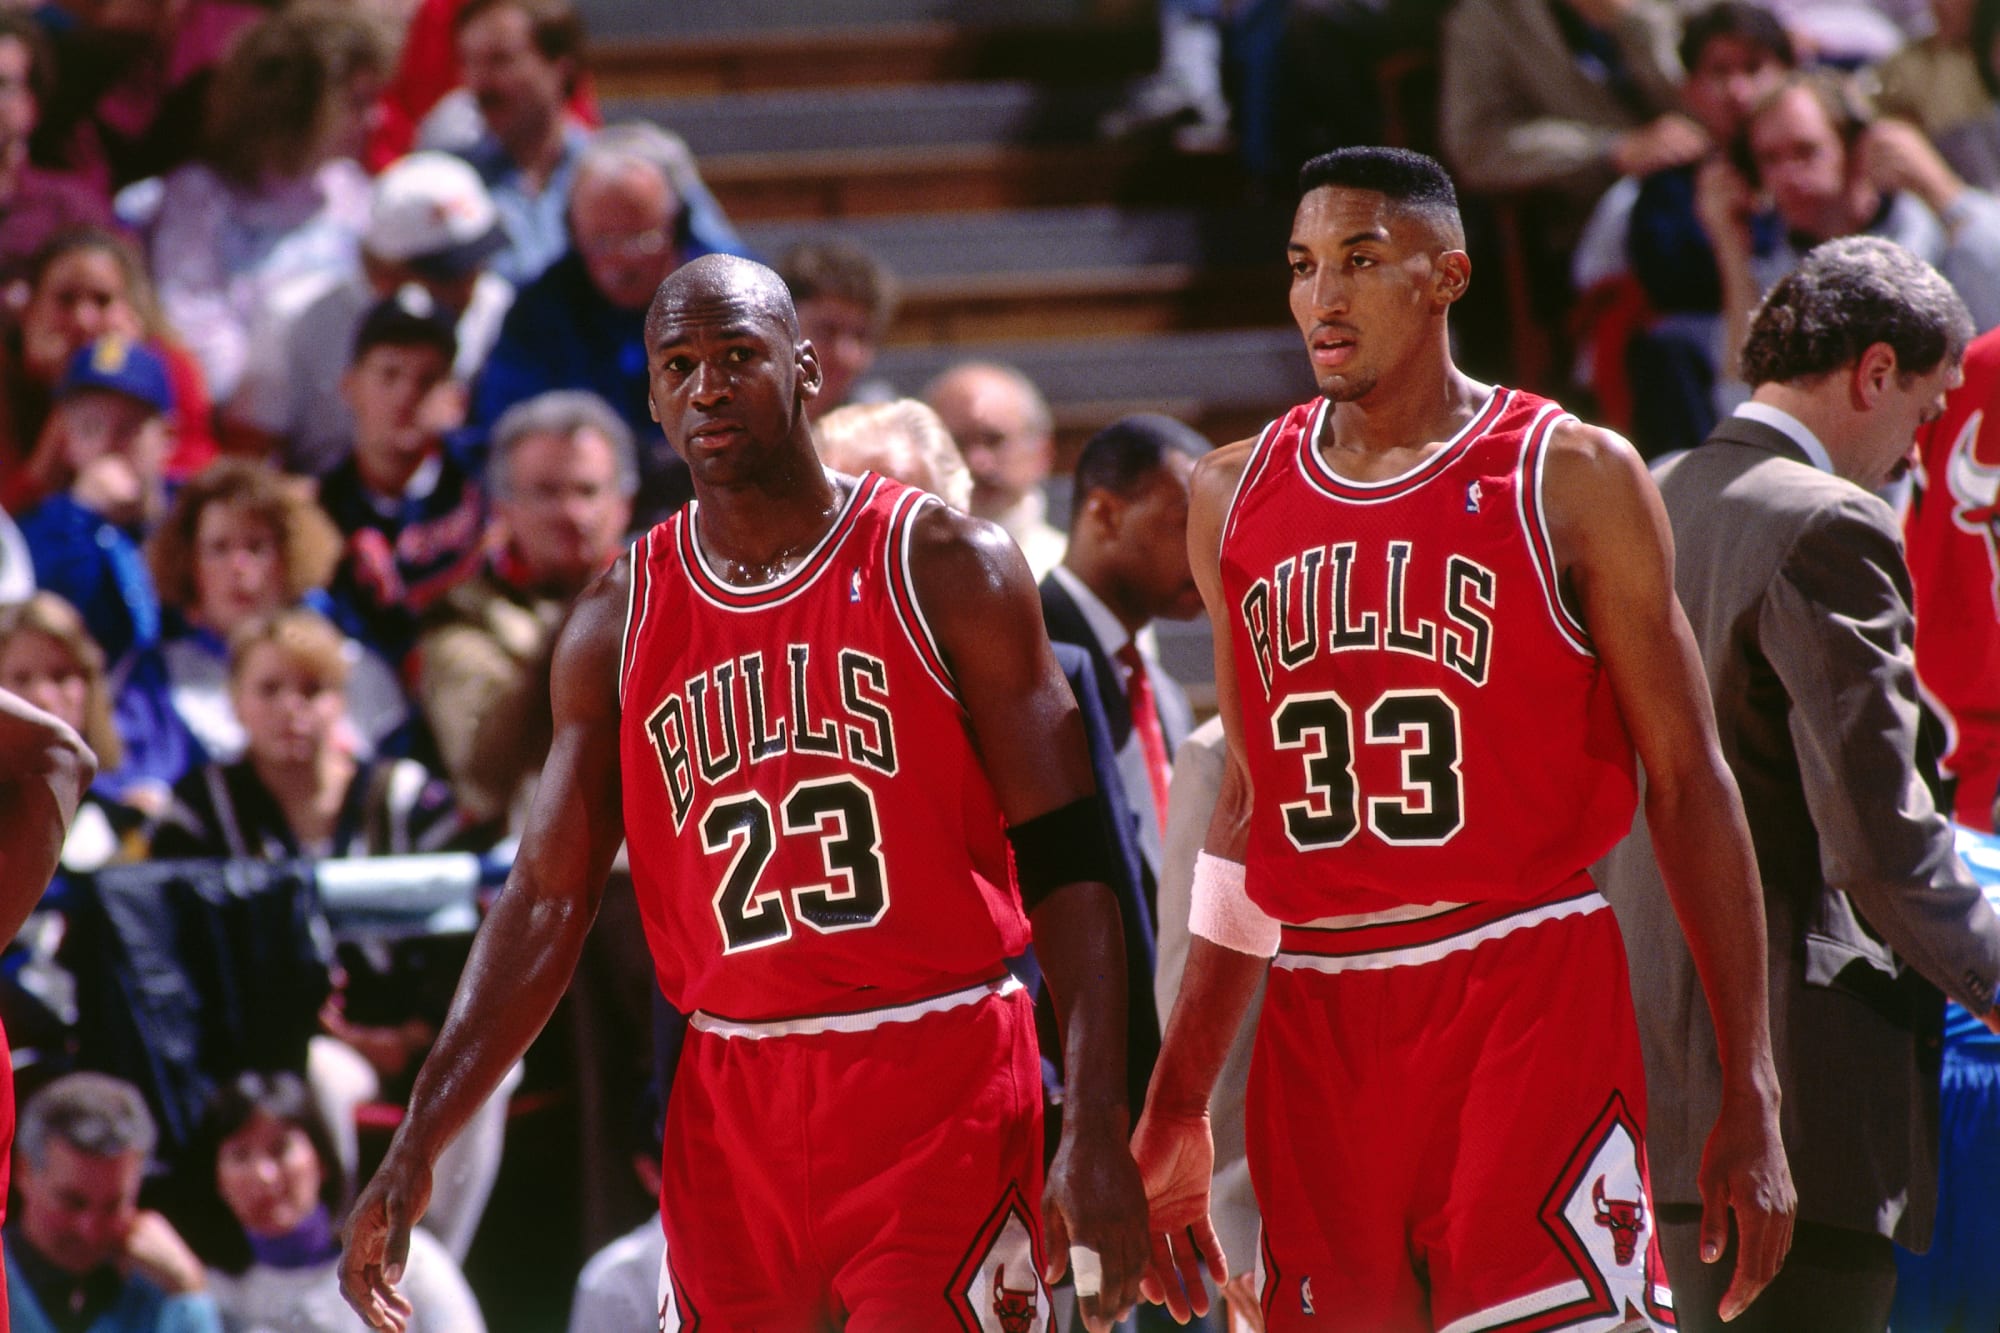 Le 26 octobre 1984, la légende Michael Jordan prenait vie